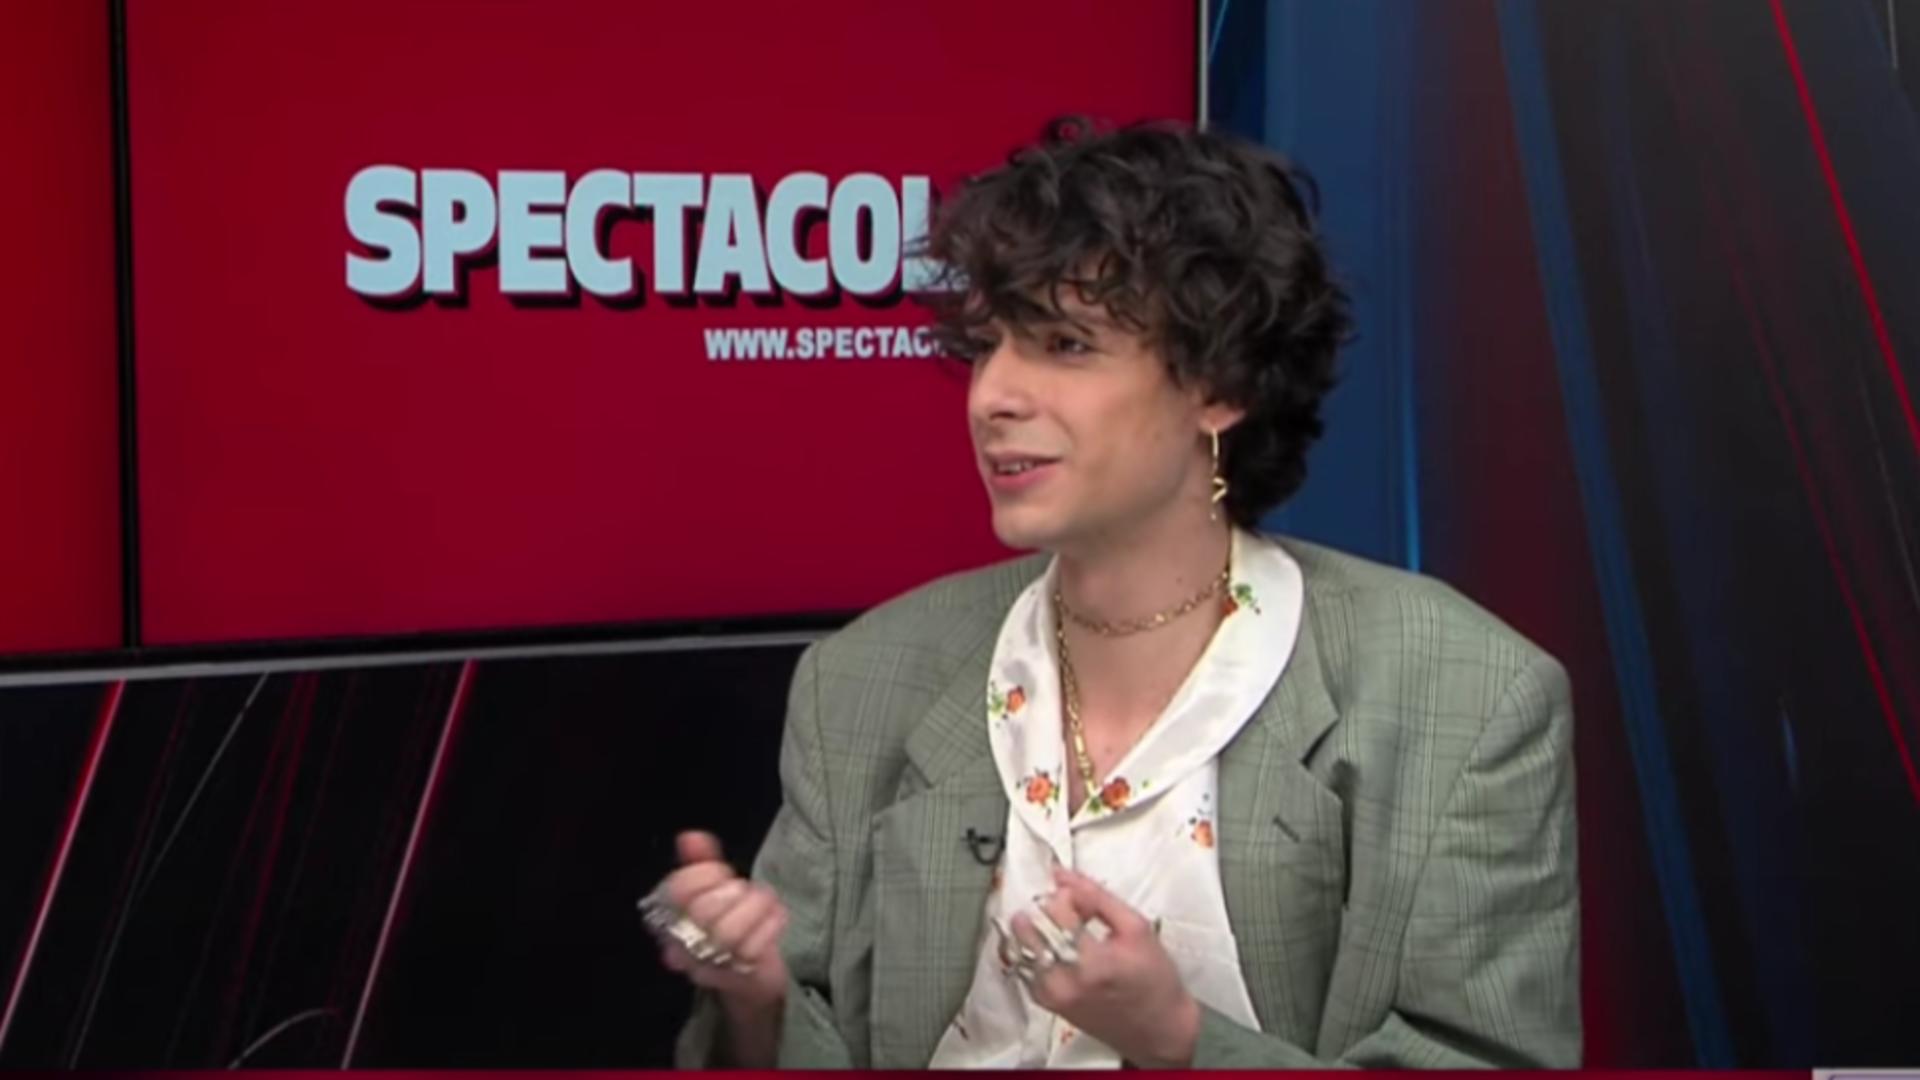 Țopescu Junior a apărut îmbrăcat în femeie în cadrul unei emisiuni. Video cu prezentatorul purtând cercei, lanțuri asortate și o cămașă cu model floral